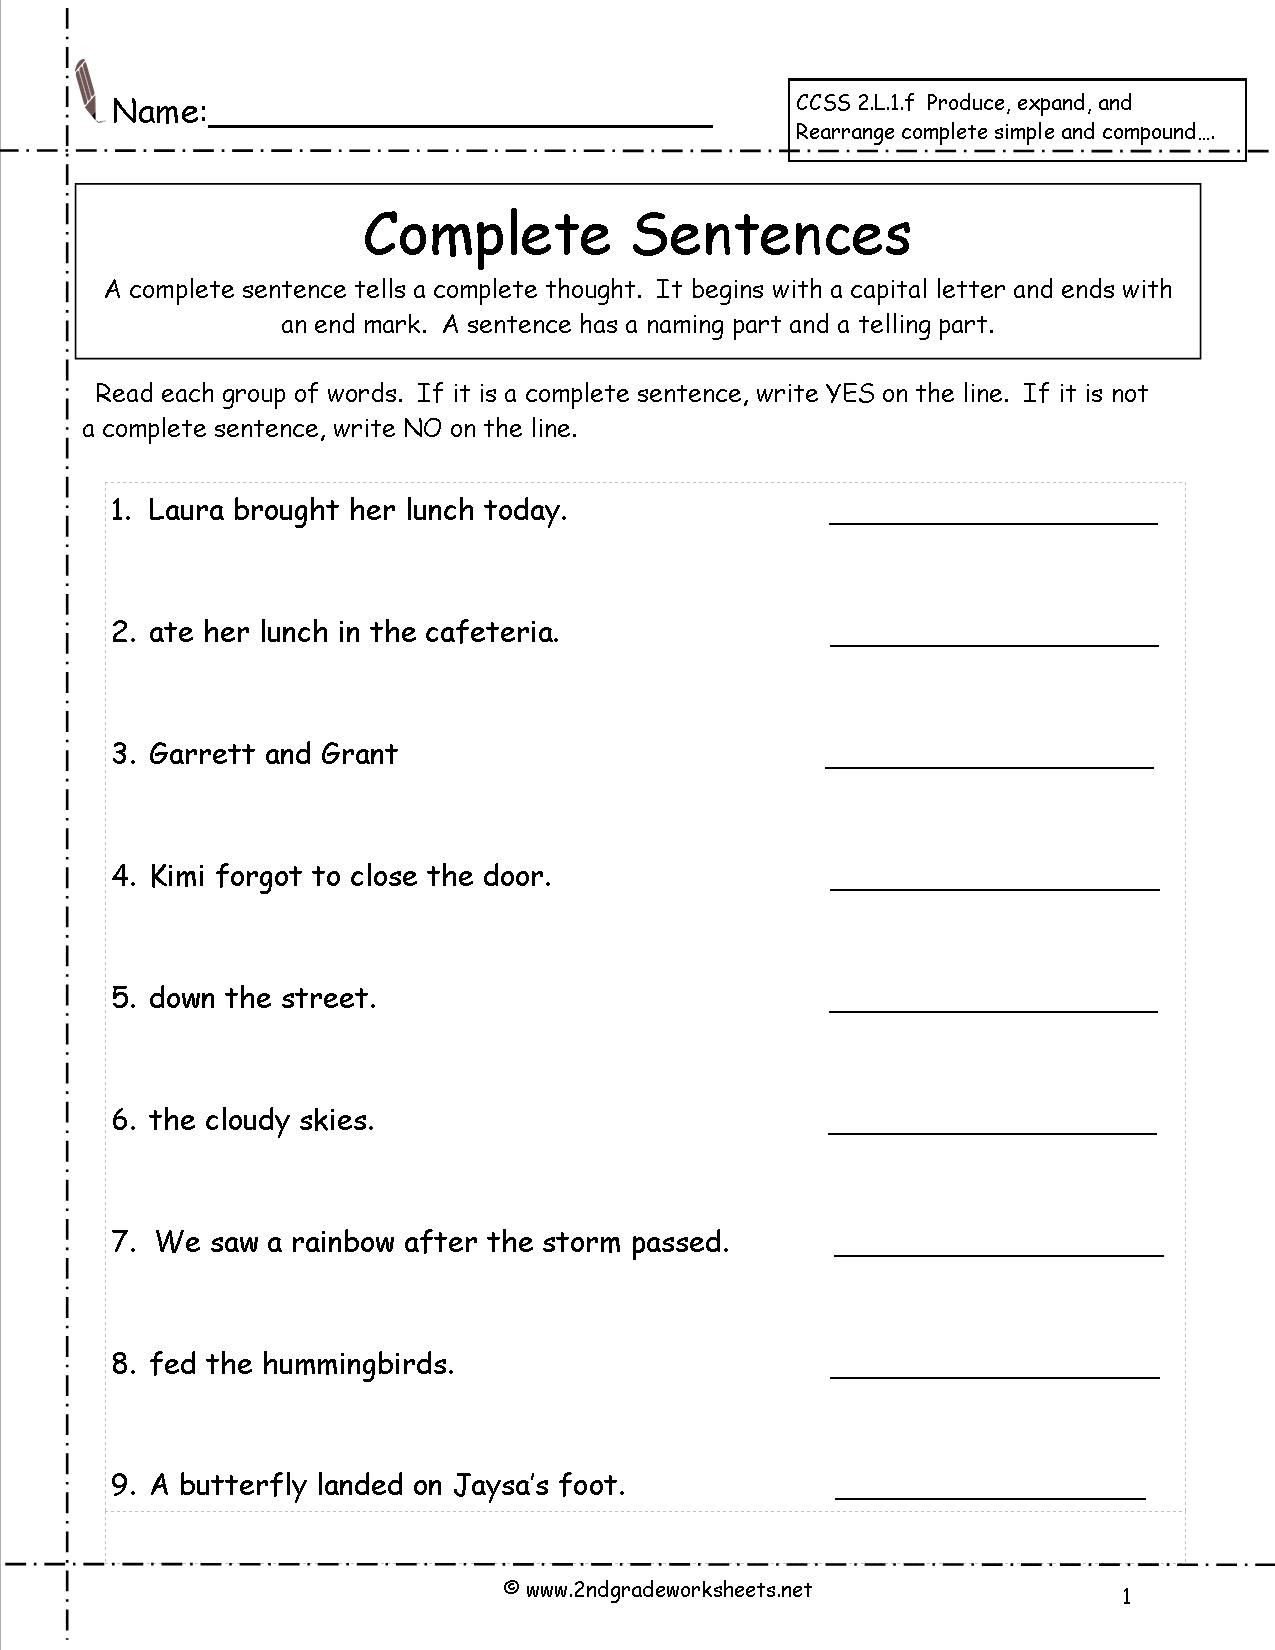 Complete Sentence Worksheets 1st Grade Second Grade Sentences Worksheets Ccss 2 L 1 F Worksheets